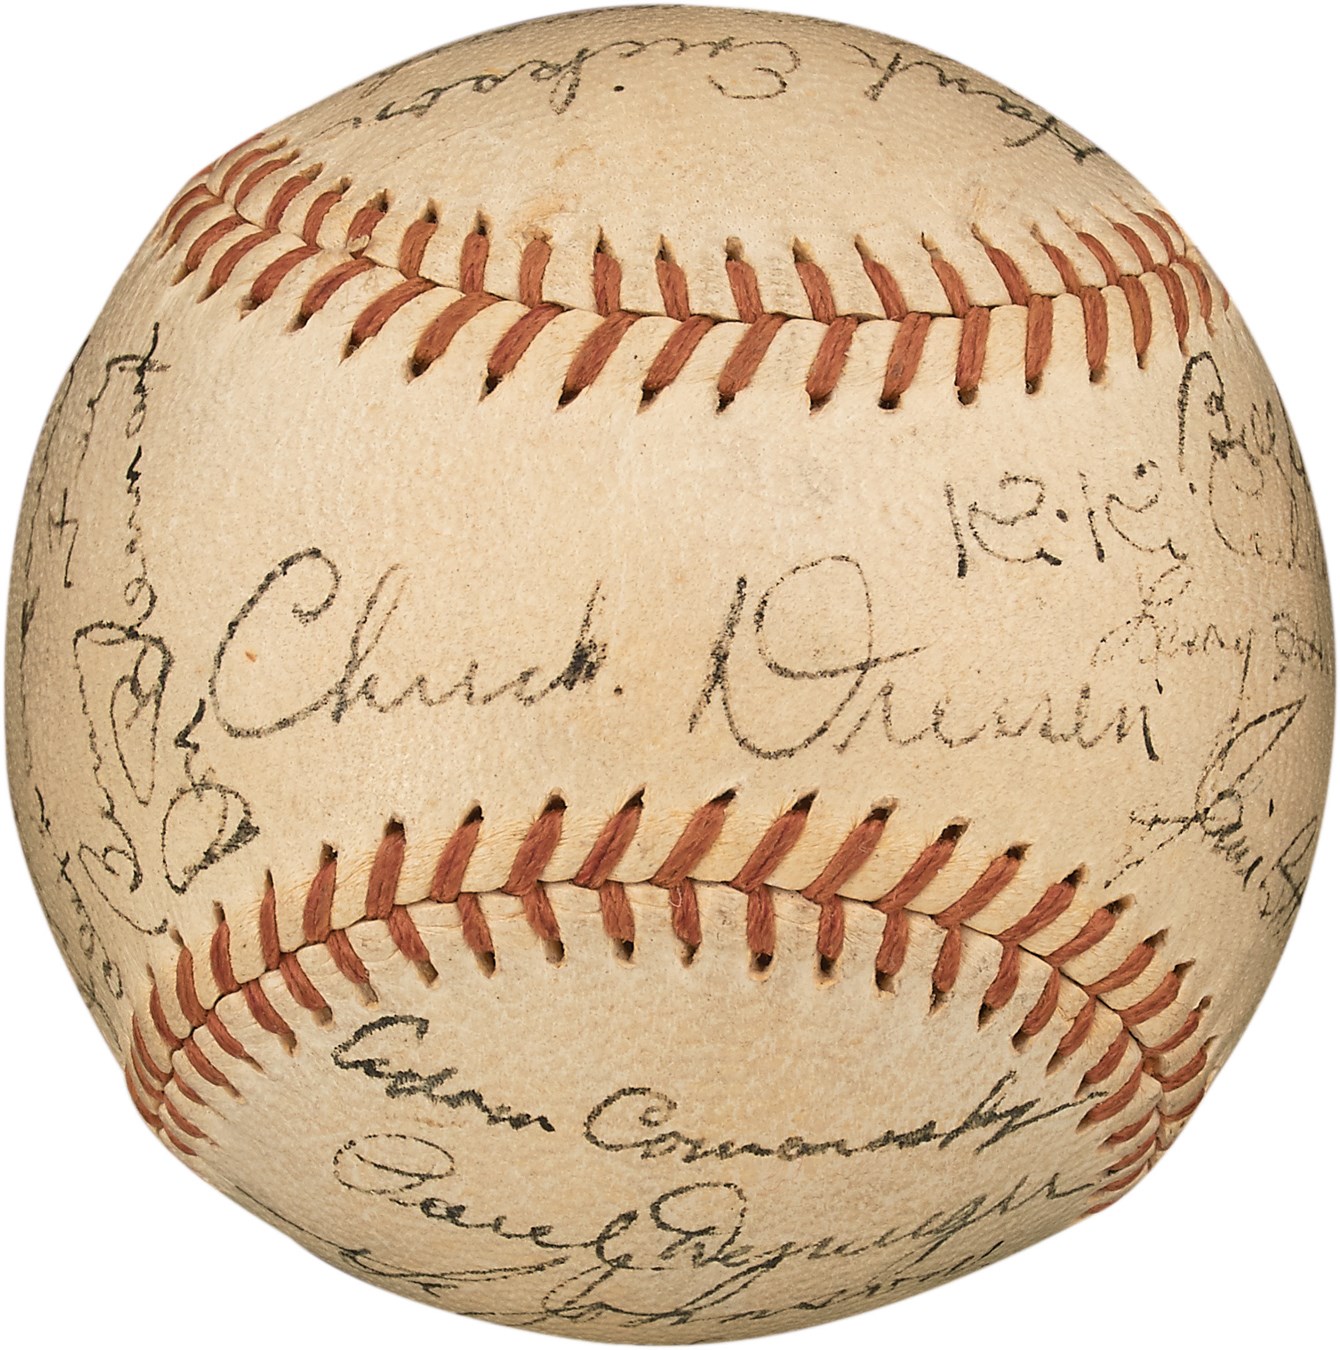 Pete Rose & Cincinnati Reds - 1935 Cincinnati Reds Team-Signed Baseball